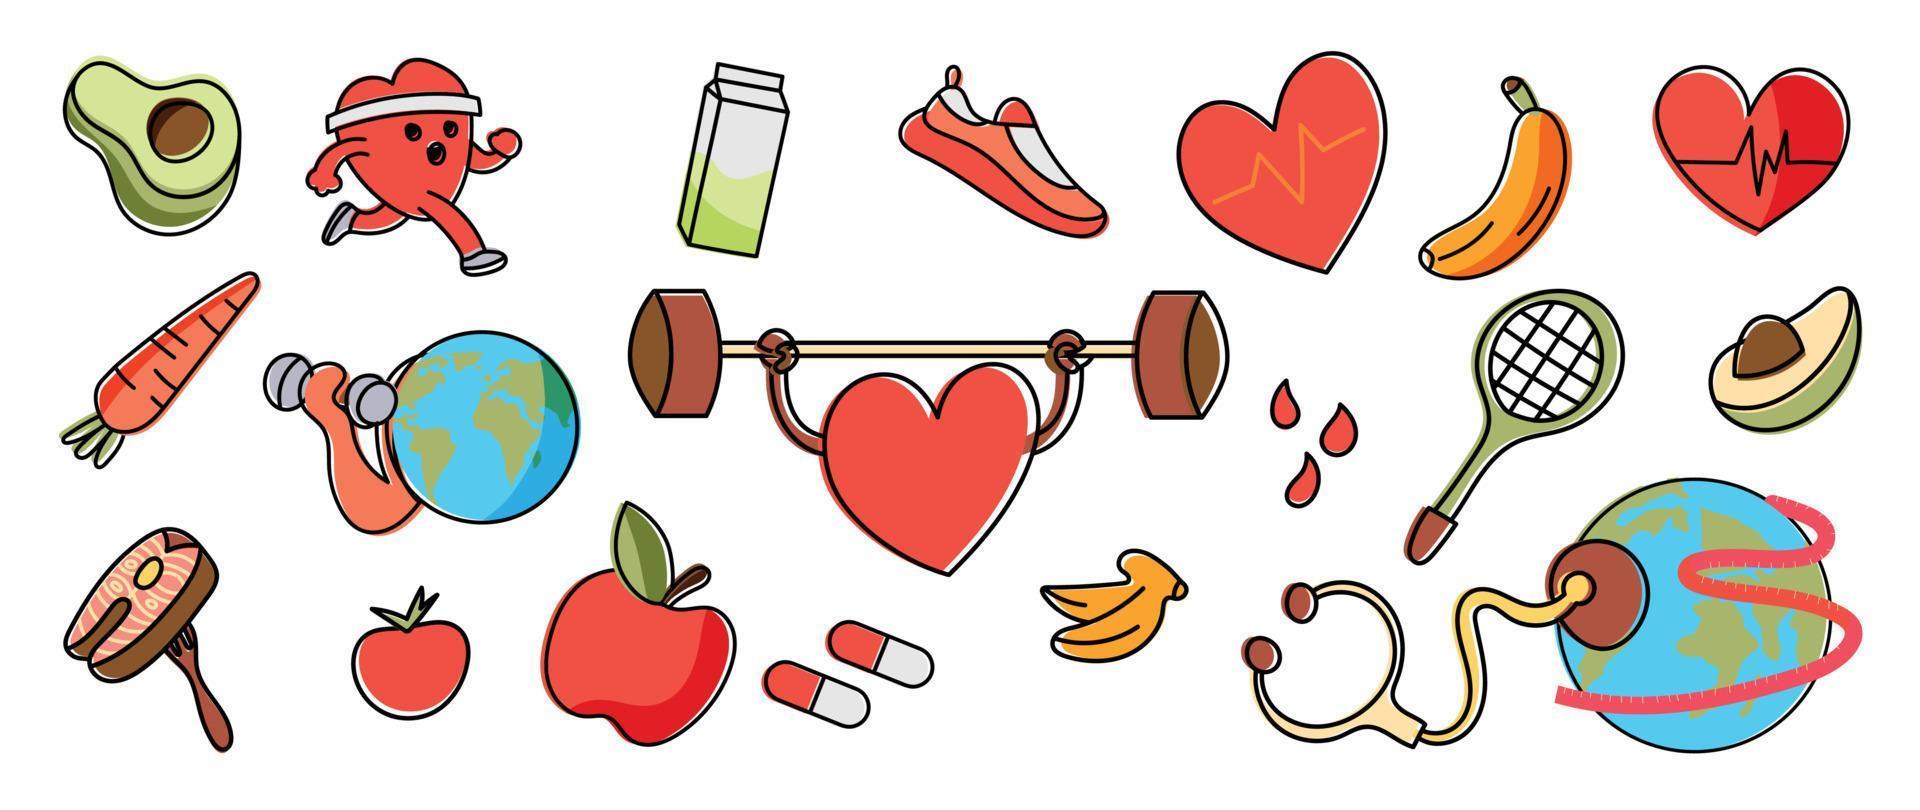 wereld Gezondheid dag concept, 7 april, element vector set. hand- getrokken tekening stijl van oefening hart, eetpatroon voedsel, voeding, sport, wereldbol, geneesmiddel. ontwerp voor web, banier, campagne, sociaal media na.